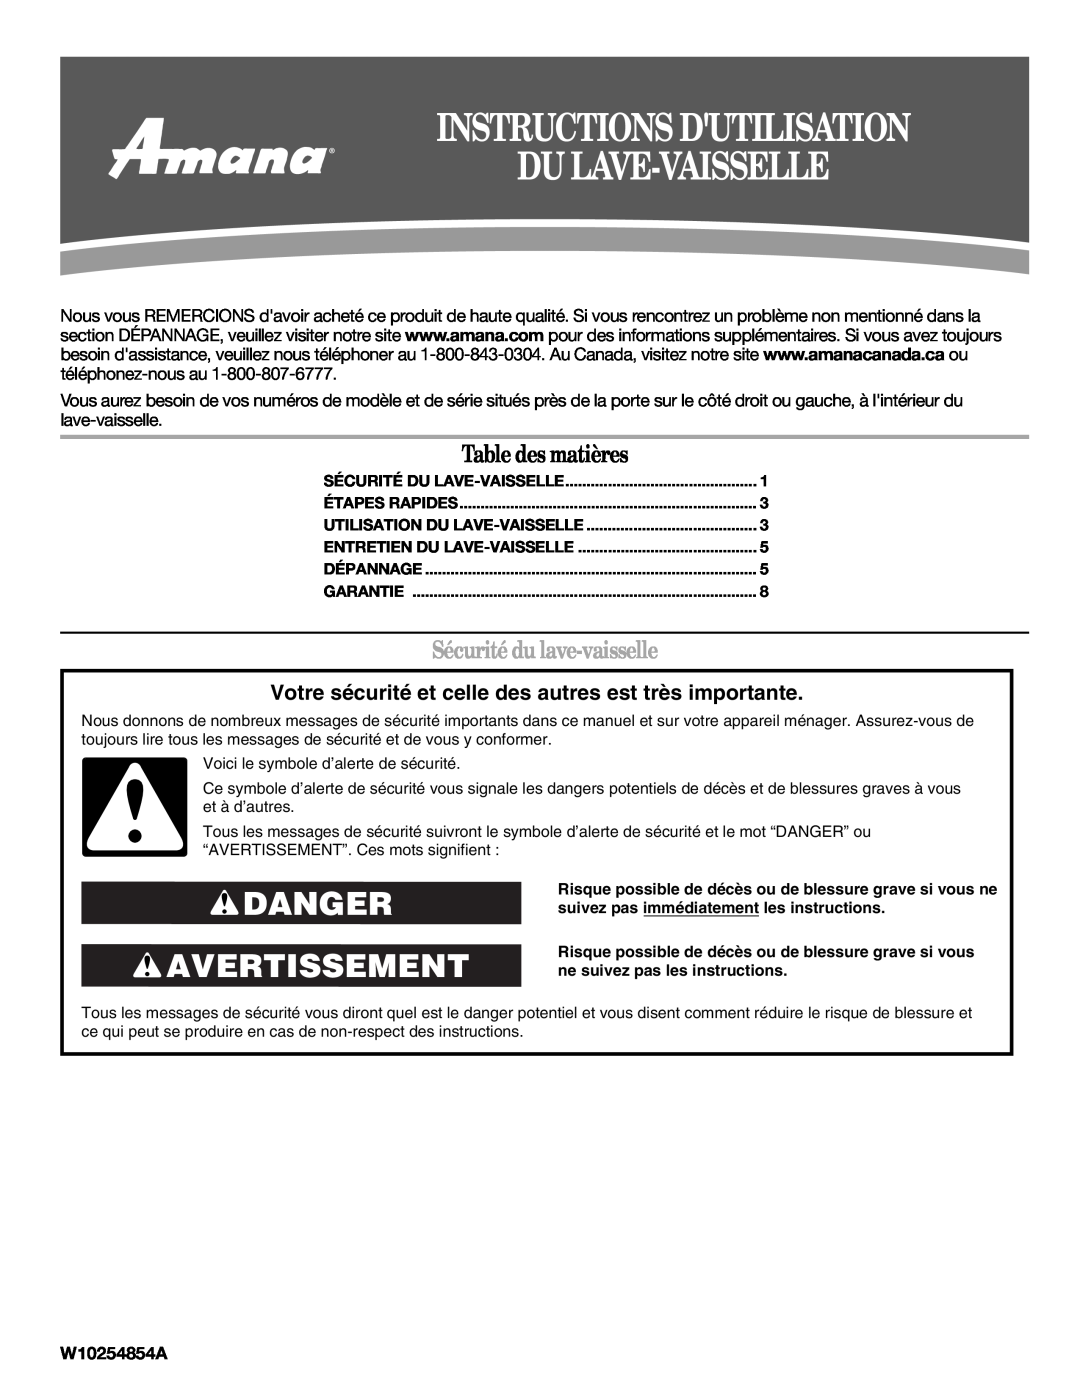 Amana W10254854A warranty Instructions Dutilisation Dulave-Vaisselle, Danger Avertissement, Table des matières 